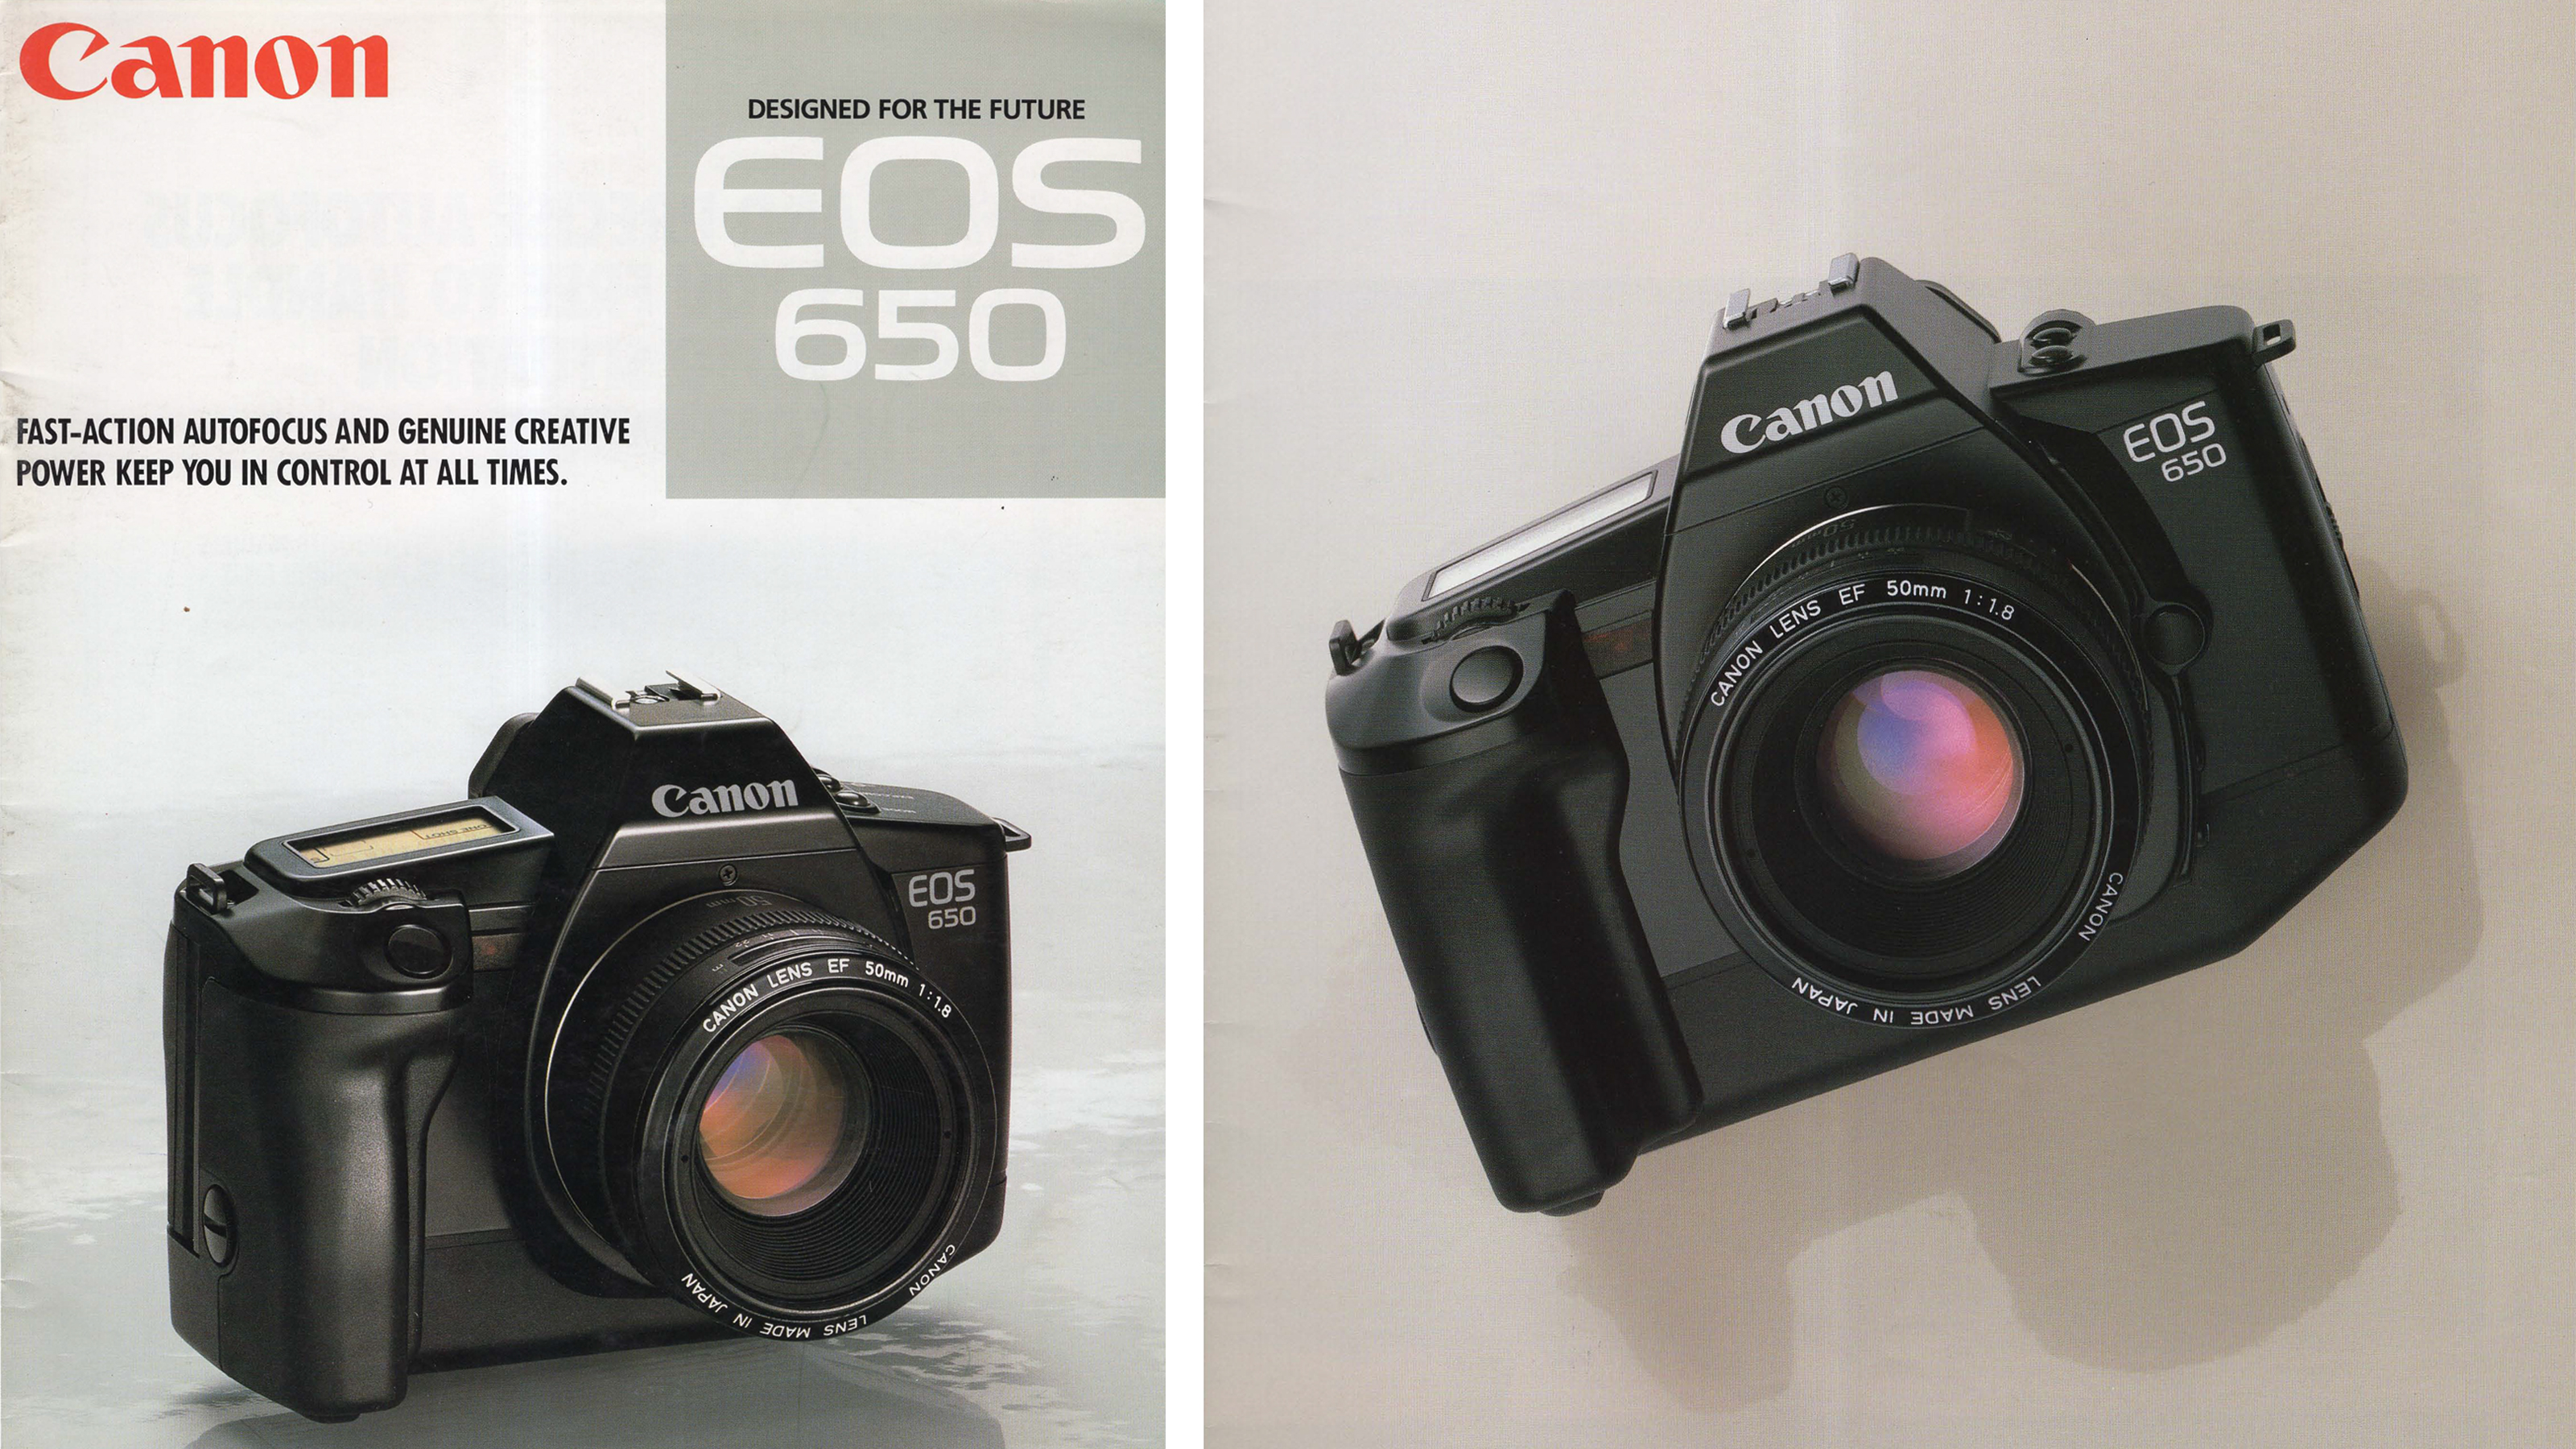 Vanha katalogi esittelee Canon EOS 650:ntä